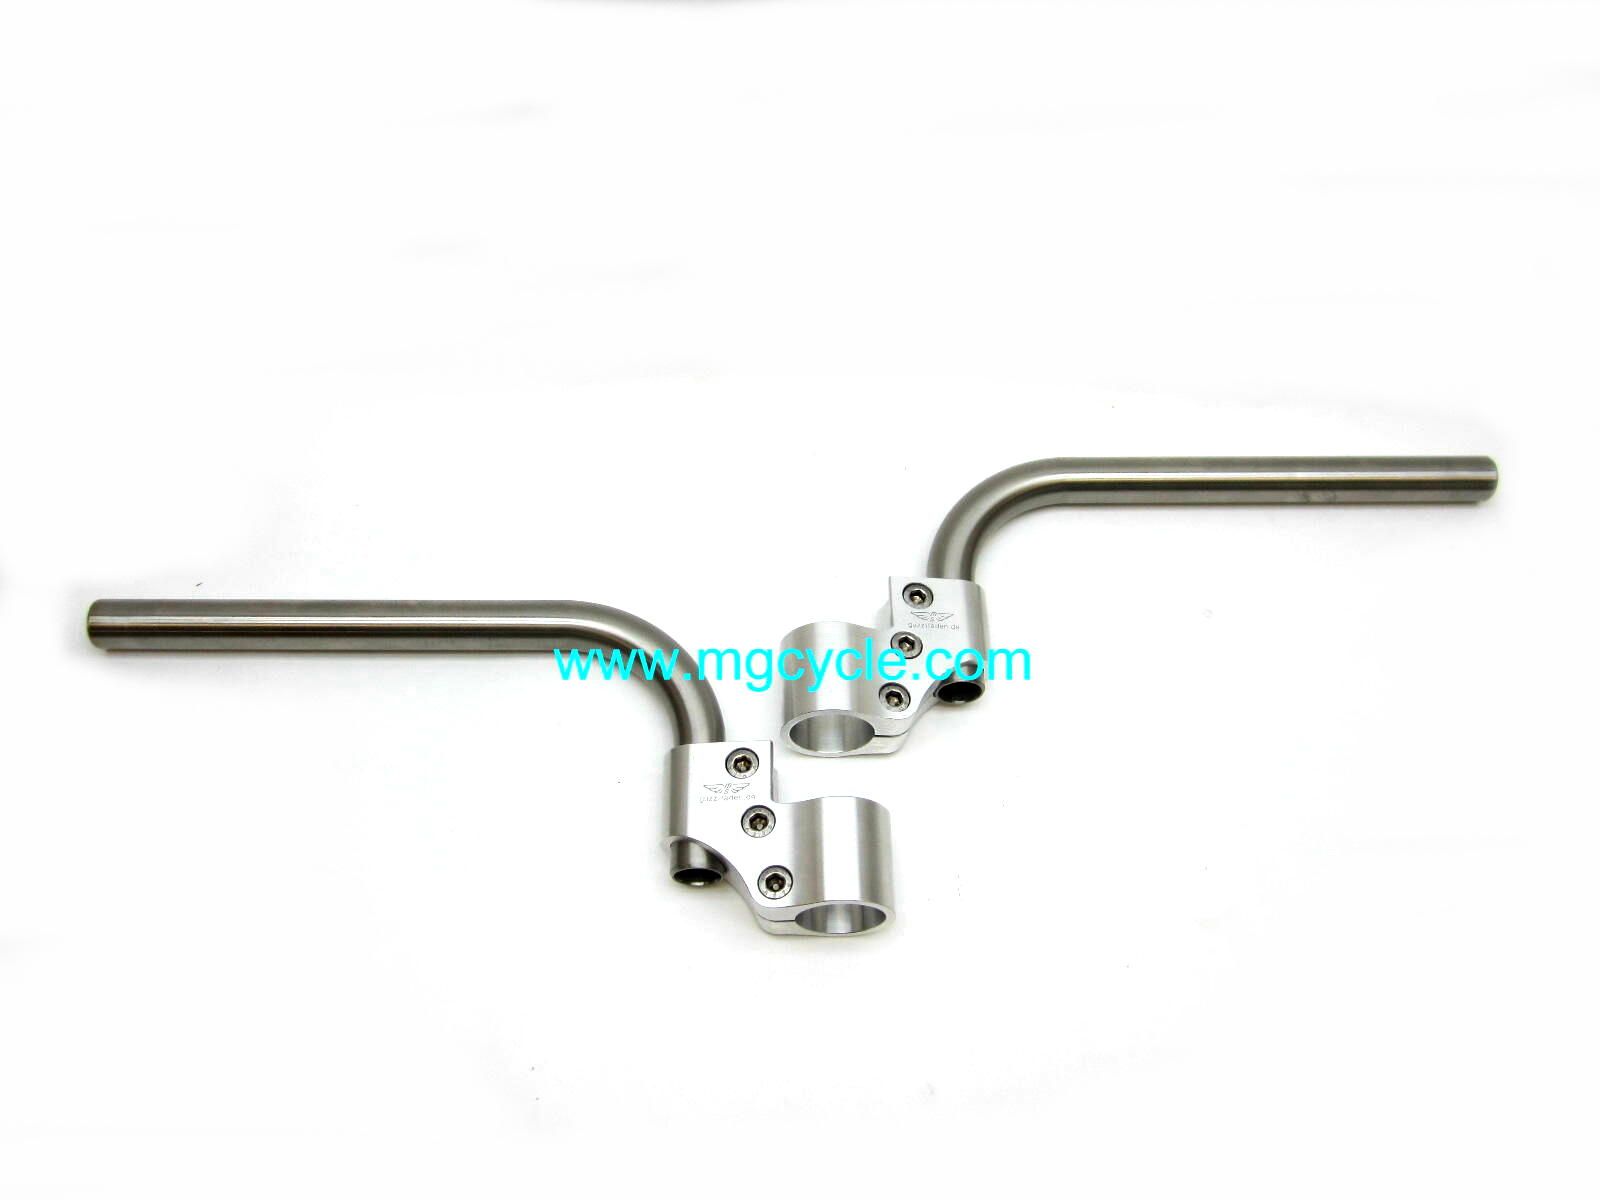 Adjustable clip-on handlebar set "Verlicchi Touring" 35mm forks